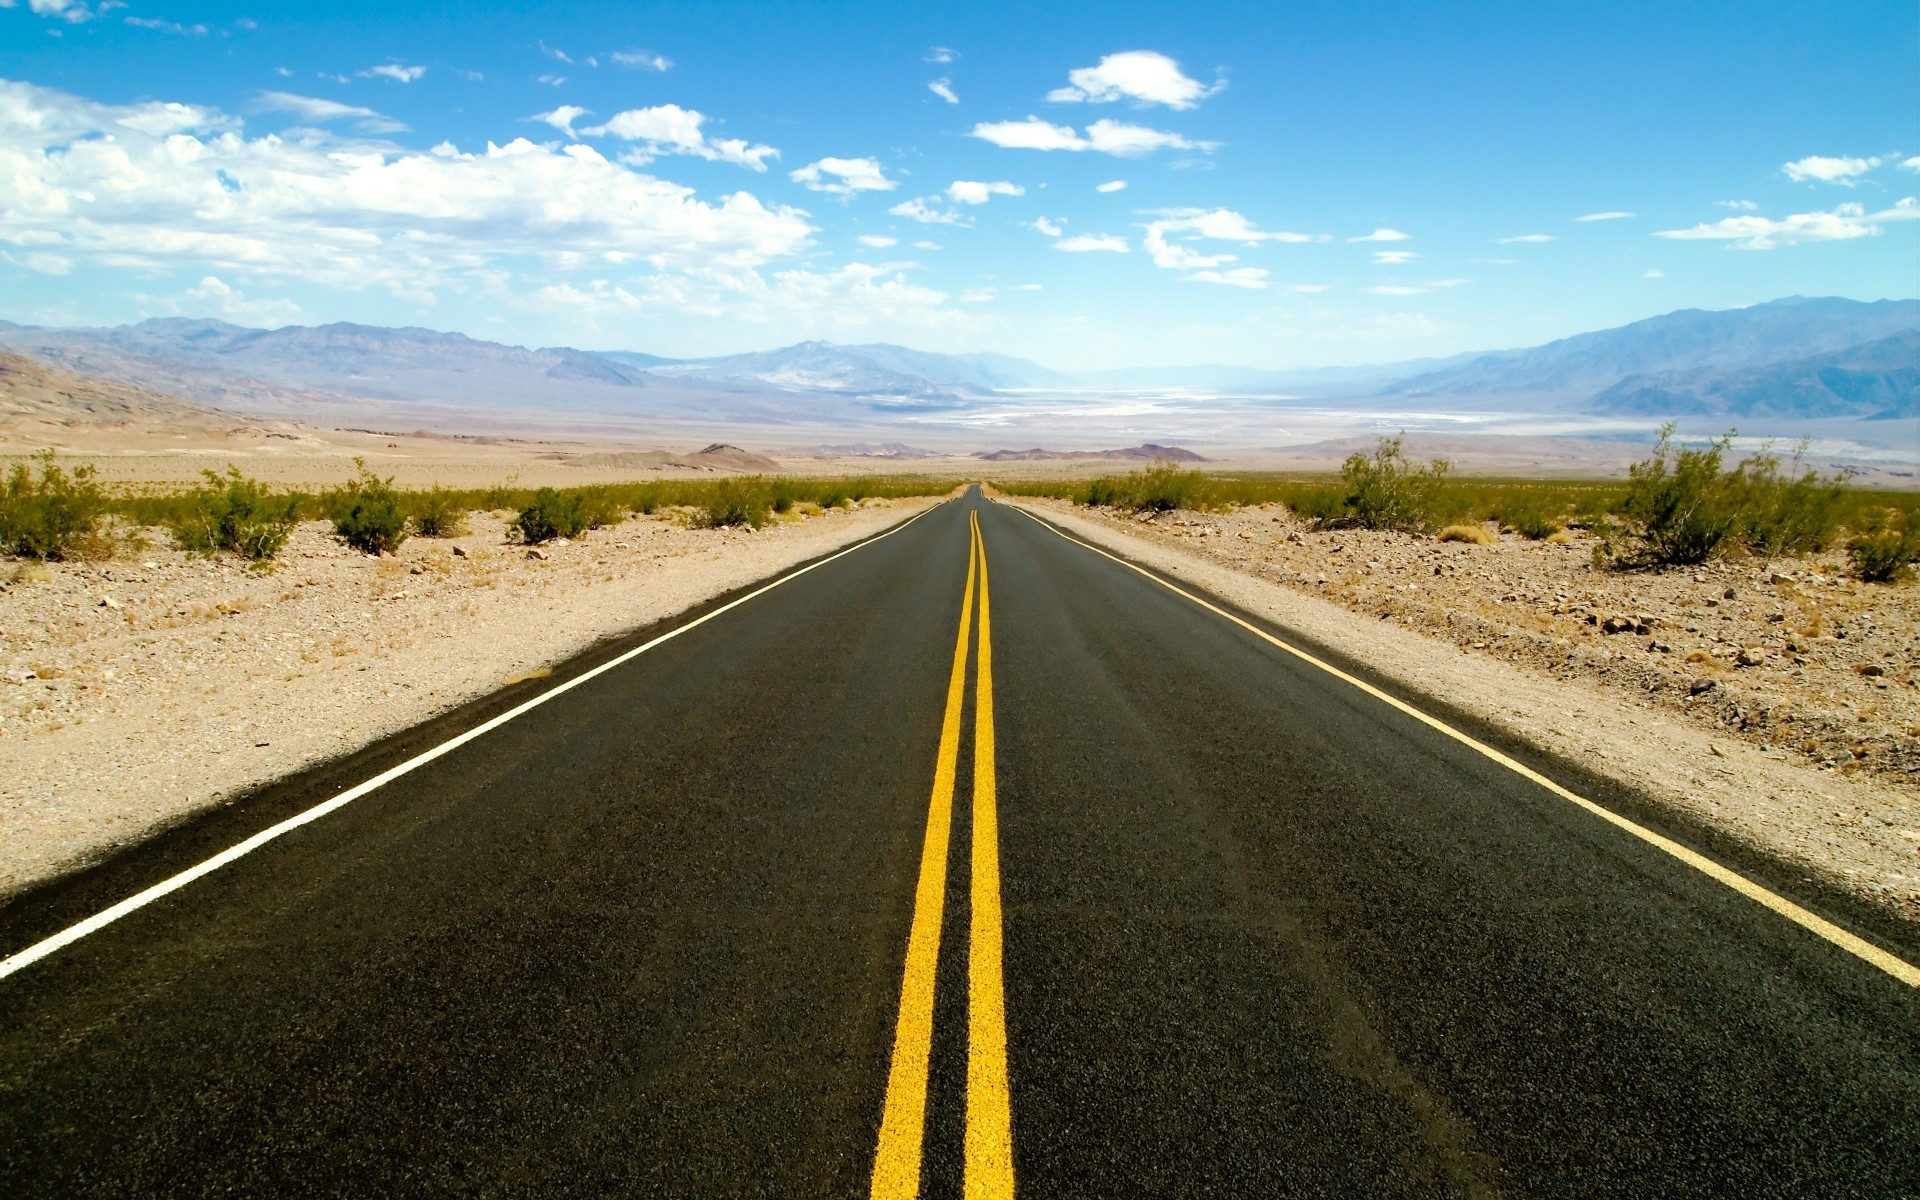 пустыни дорога шоссе асфальт путешествия небо пустые руководство прям пейзаж долго природа хорды диск транспортная система